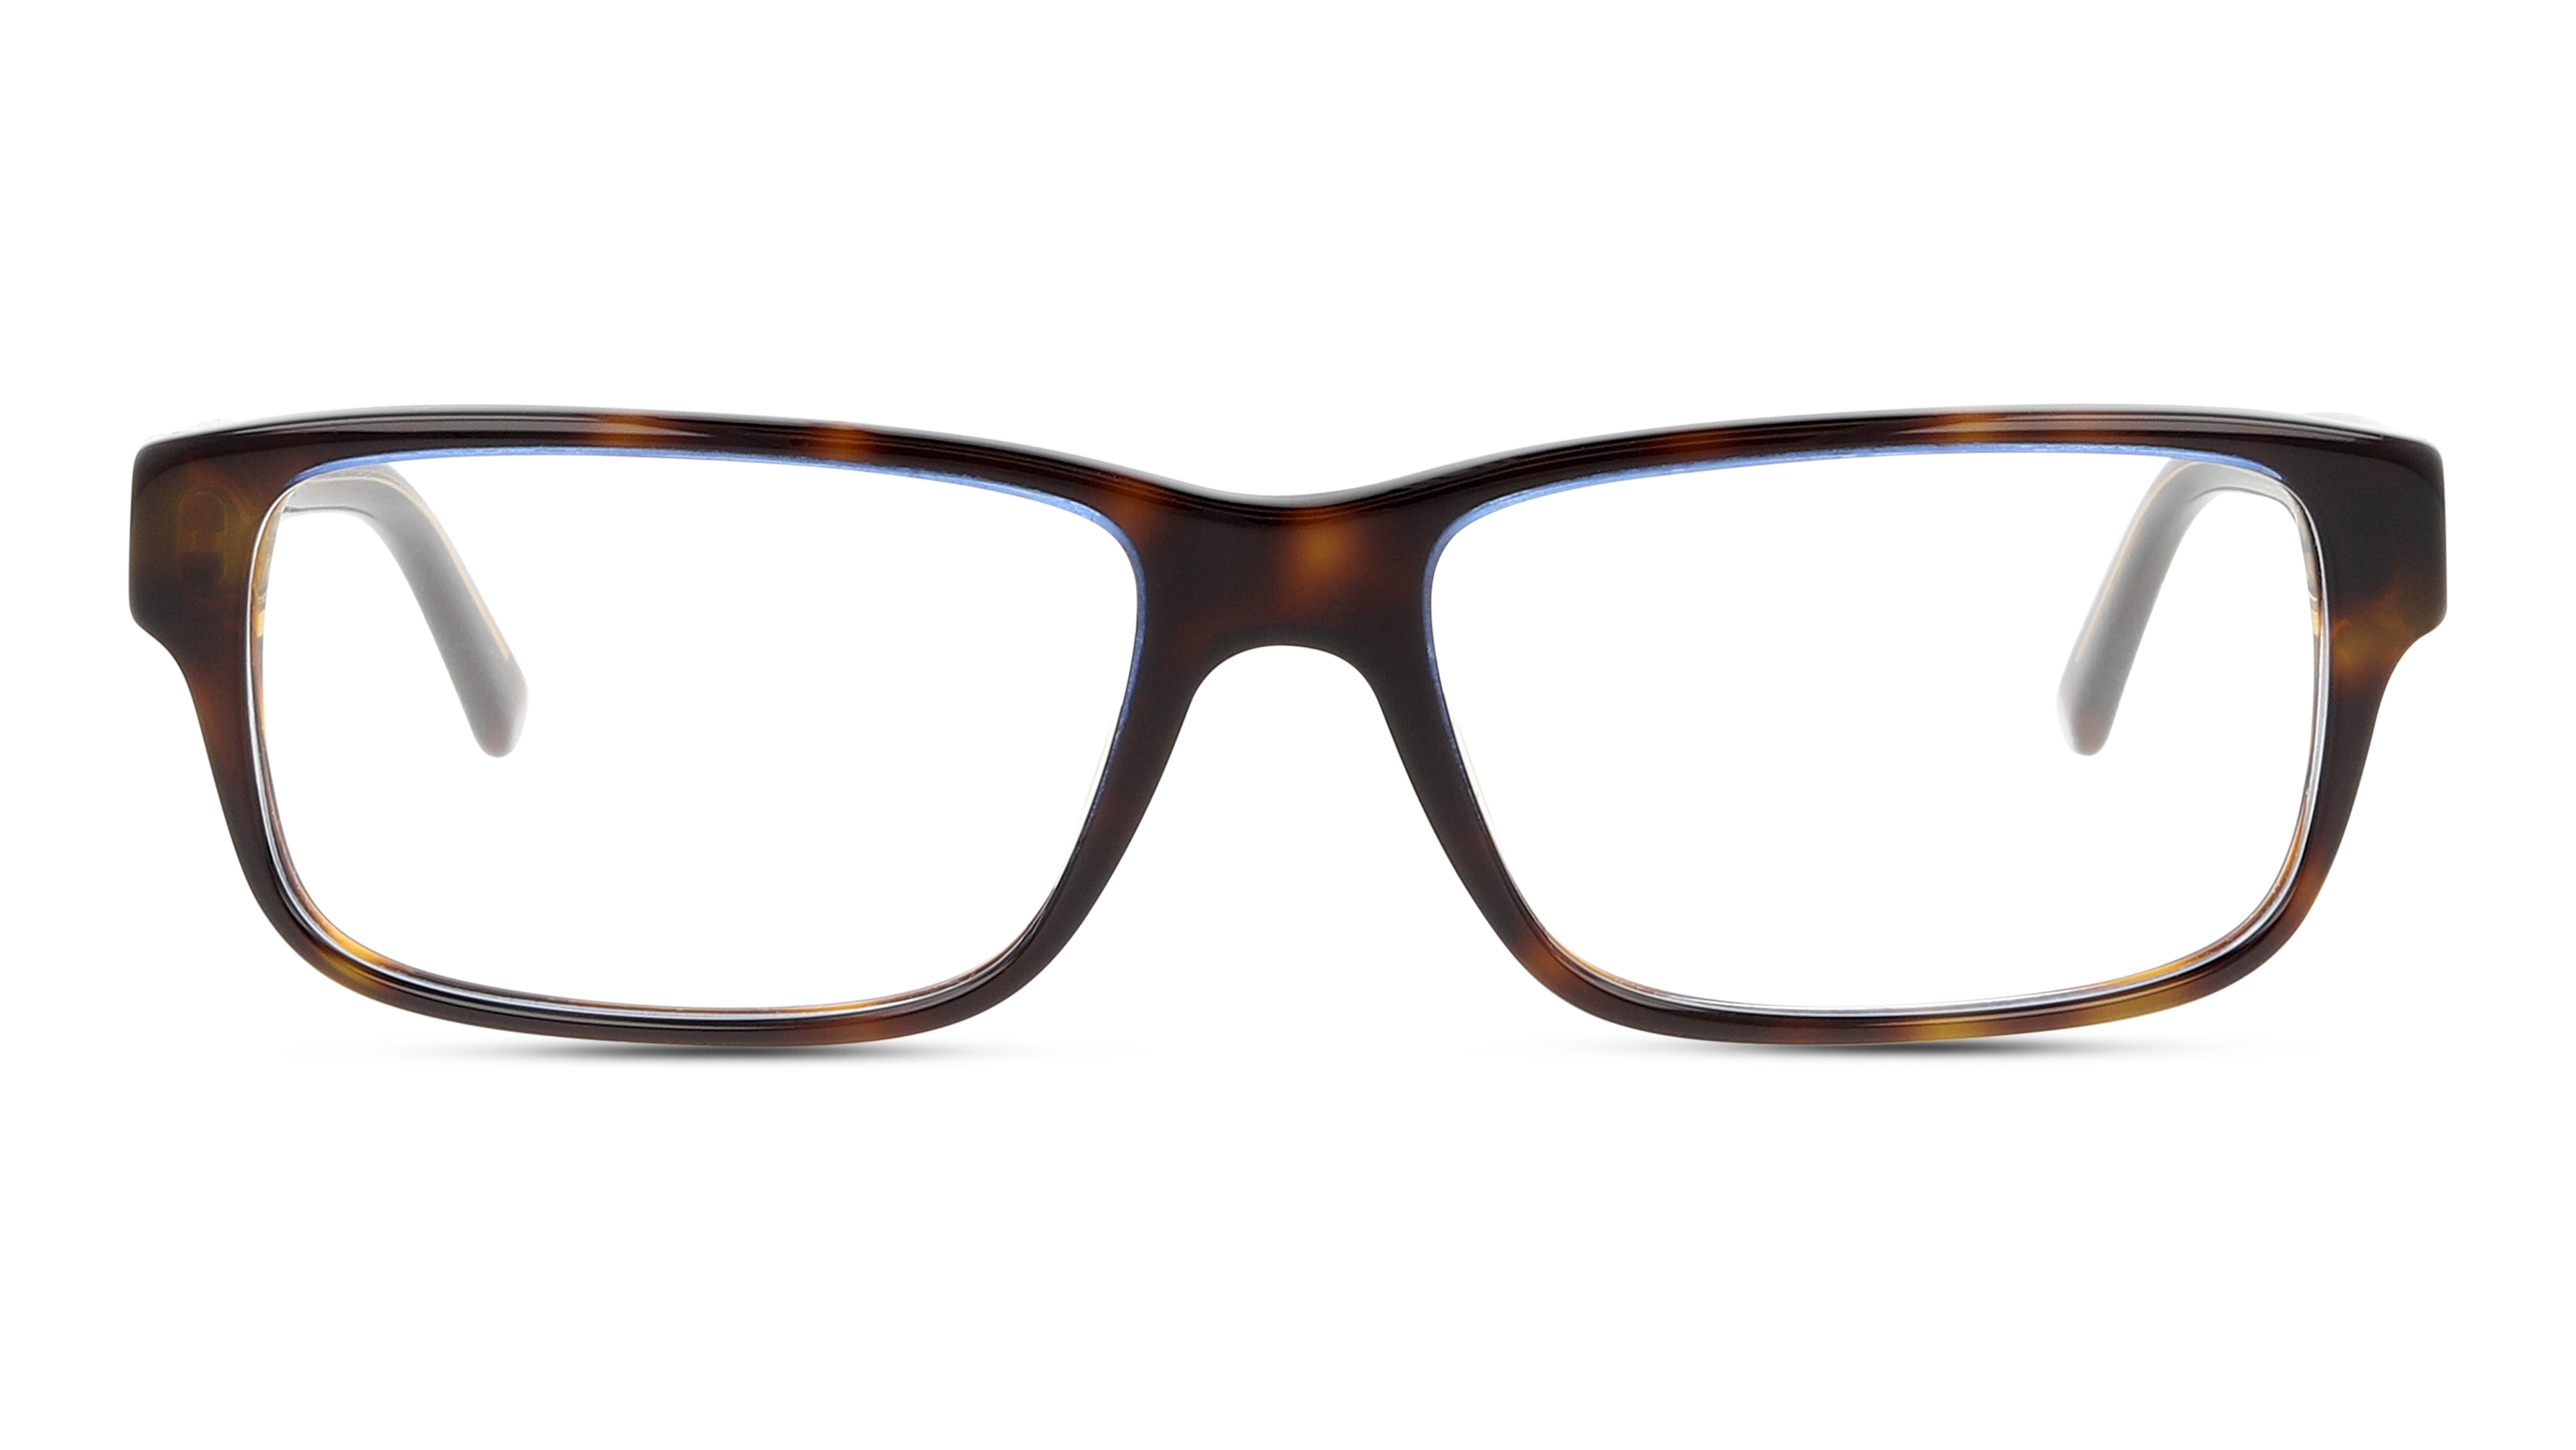 Prada PR 16MV Glasses